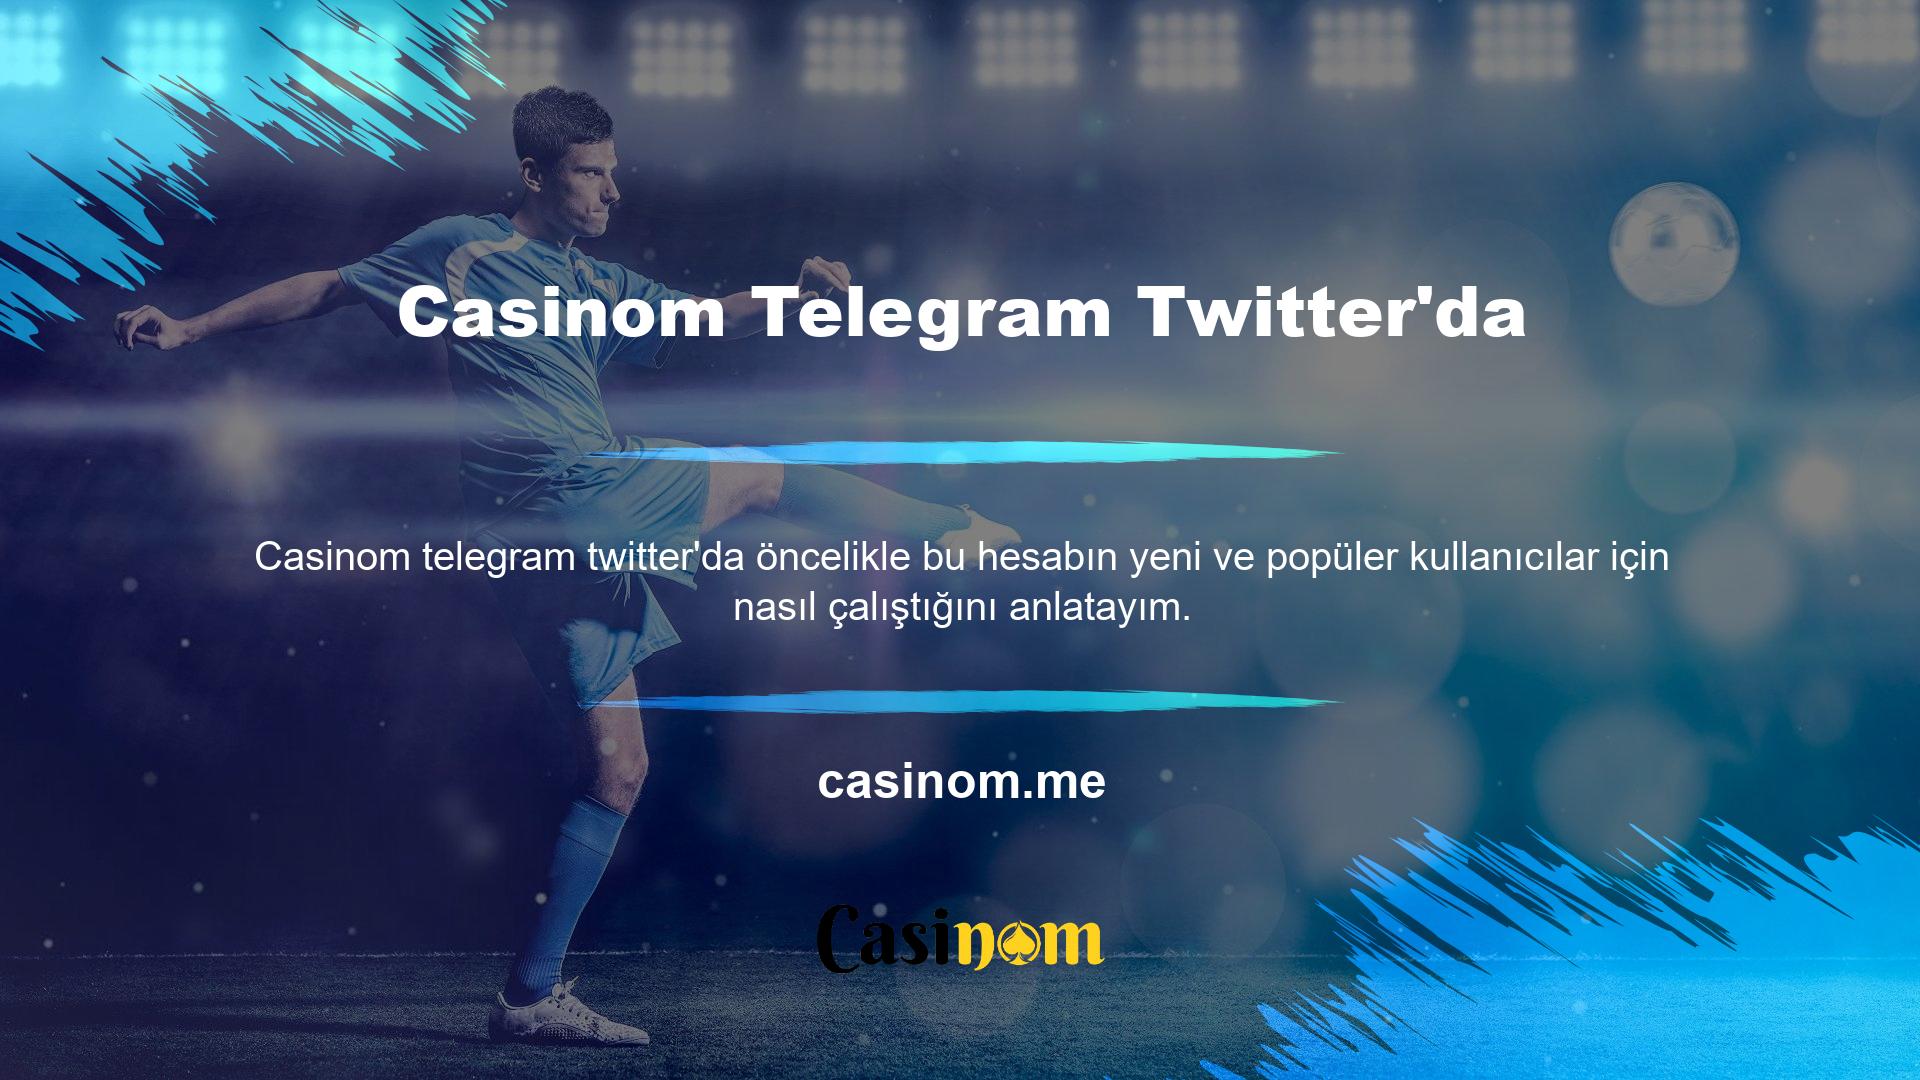 Telegram'ın tüm özelliklerine bakıldığında Casinom Telegram Twitter'ı tam bir kontrol panelidir